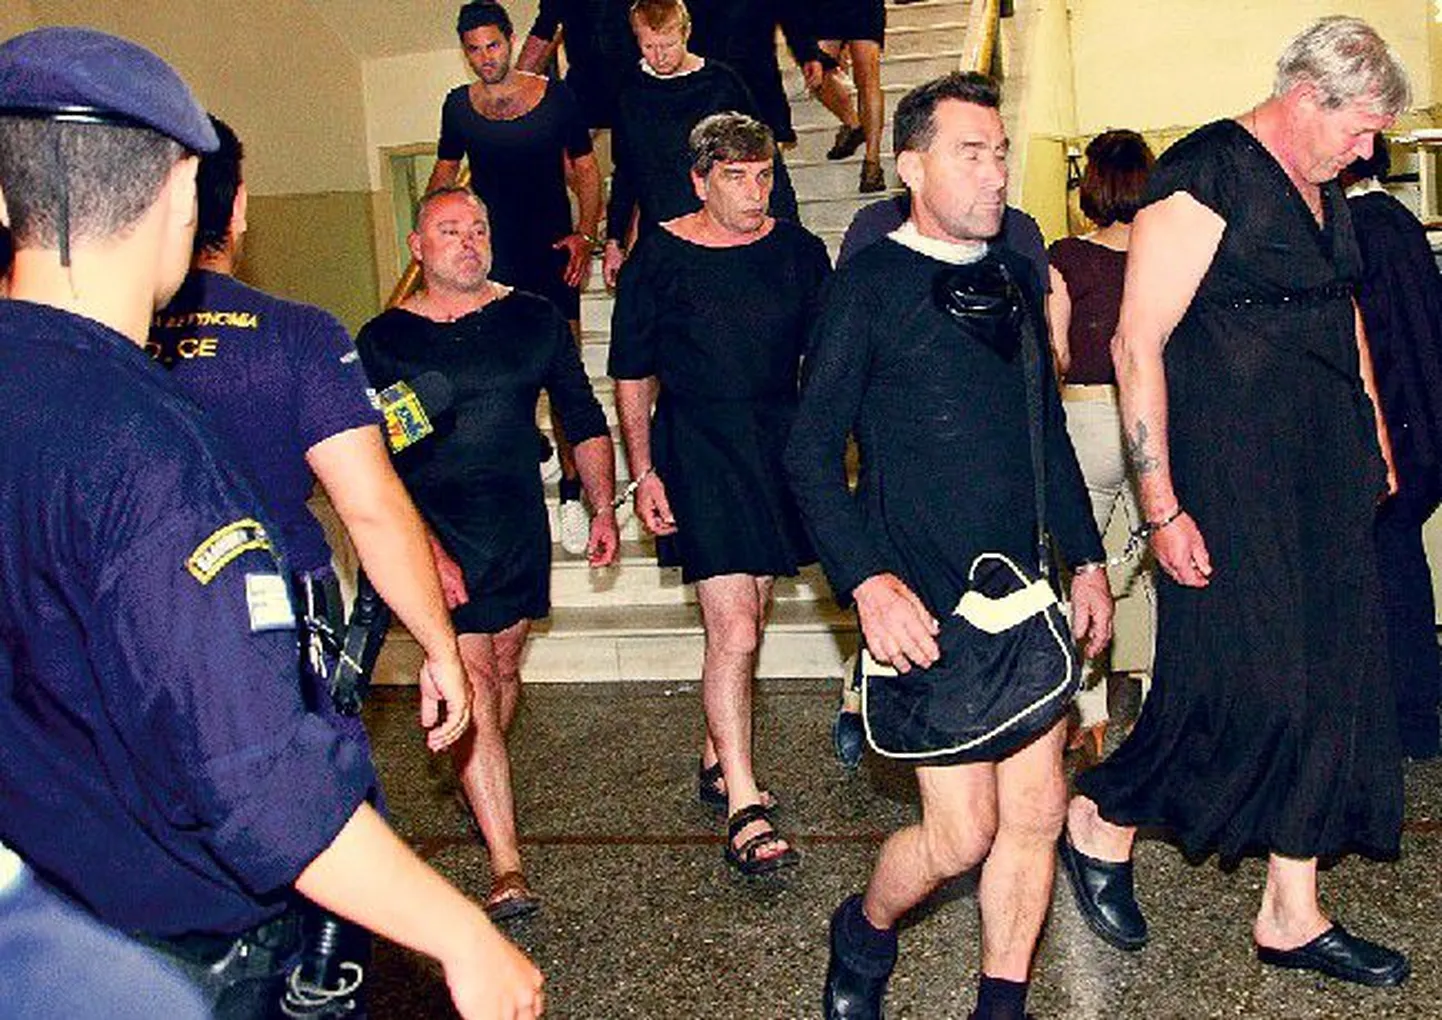 Briti turistid on kohalike tavadega pahuksisse sattunud mitmel pool Euroopas. Õigeusklikus Kreekas arreteeriti mais näiteks punt soliidsemas eas härrasmehi selle eest, et nad olid end riietanud nunnadeks.